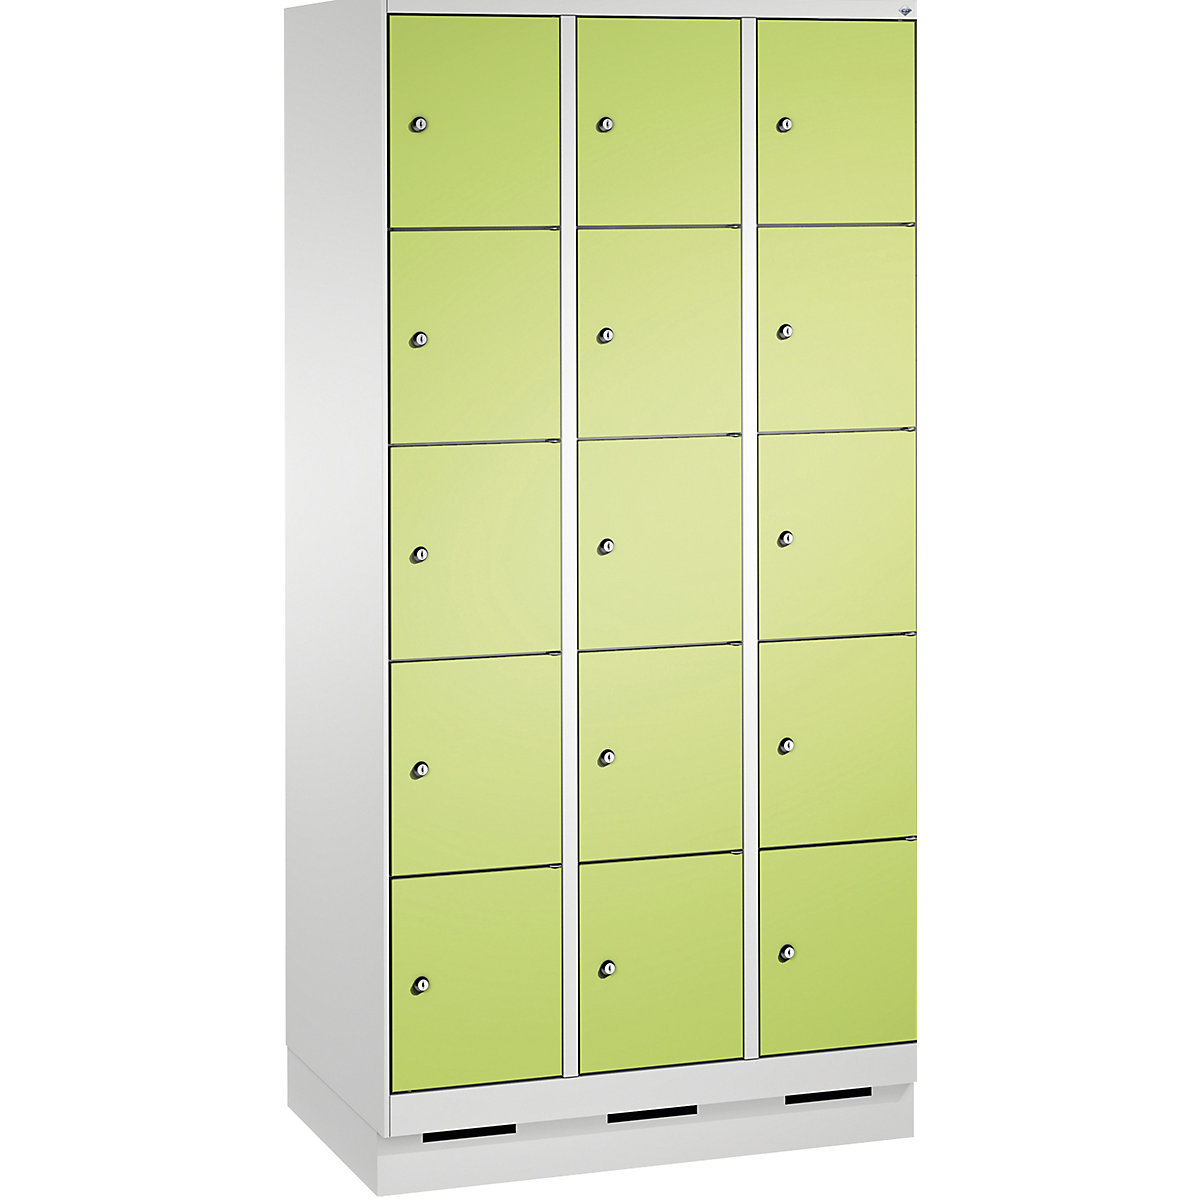 Armoire à casiers sur socle EVOLO – C+P, 3 compartiments, 5 casiers chacun, largeur compartiments 300 mm, gris clair / vert-14